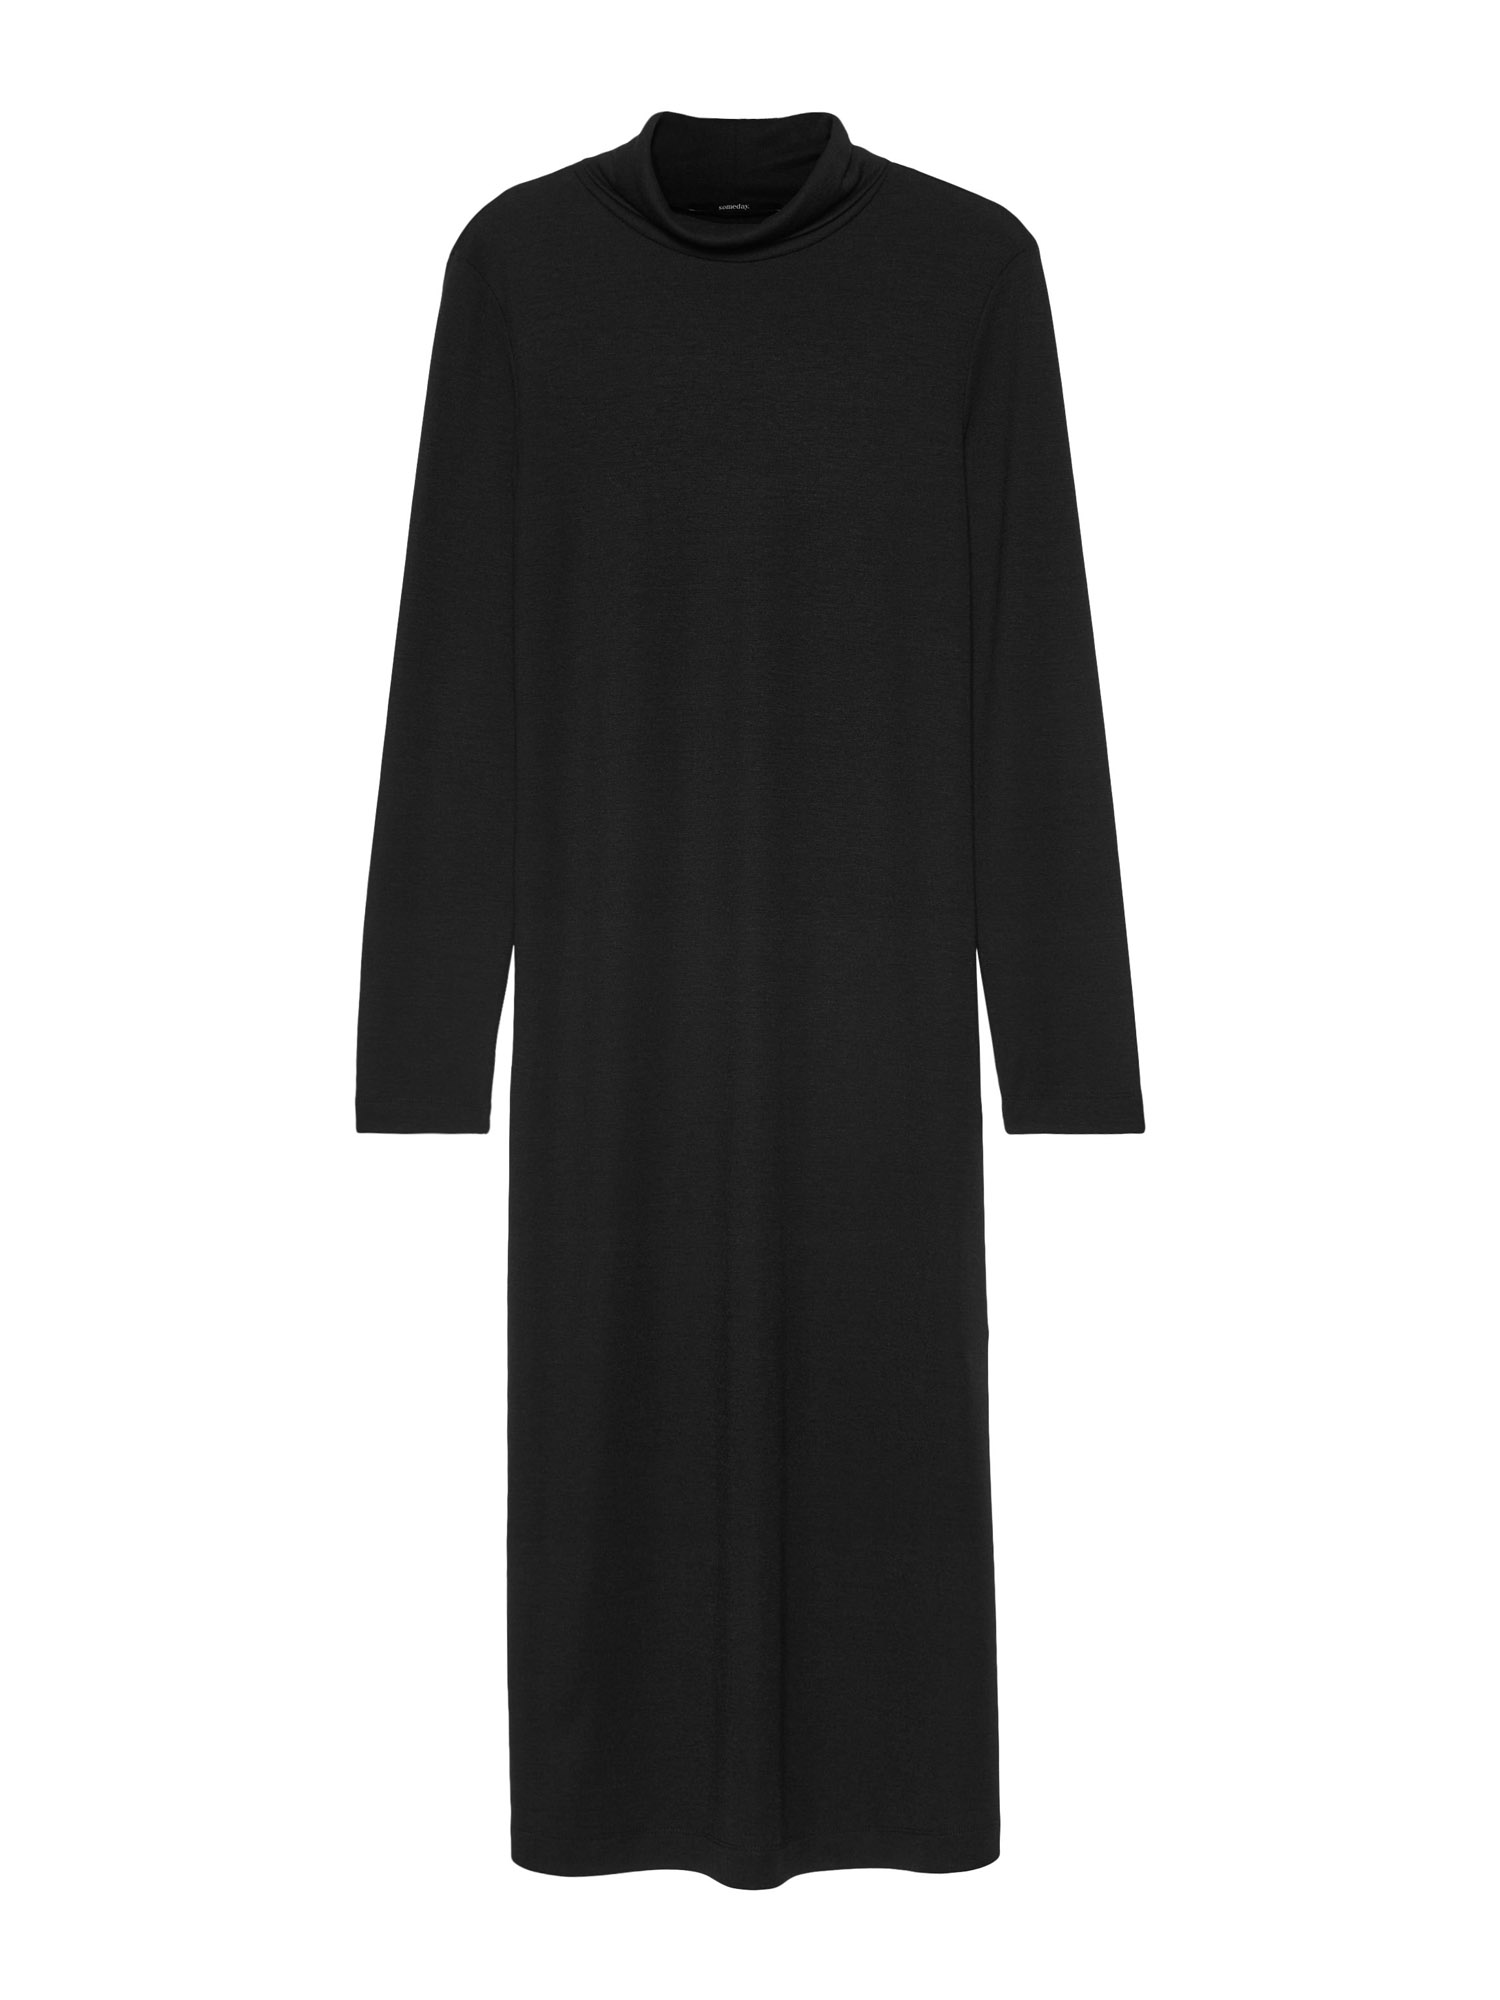 Odzież Sukienki Someday Sukienka Qumala w kolorze Czarnym 